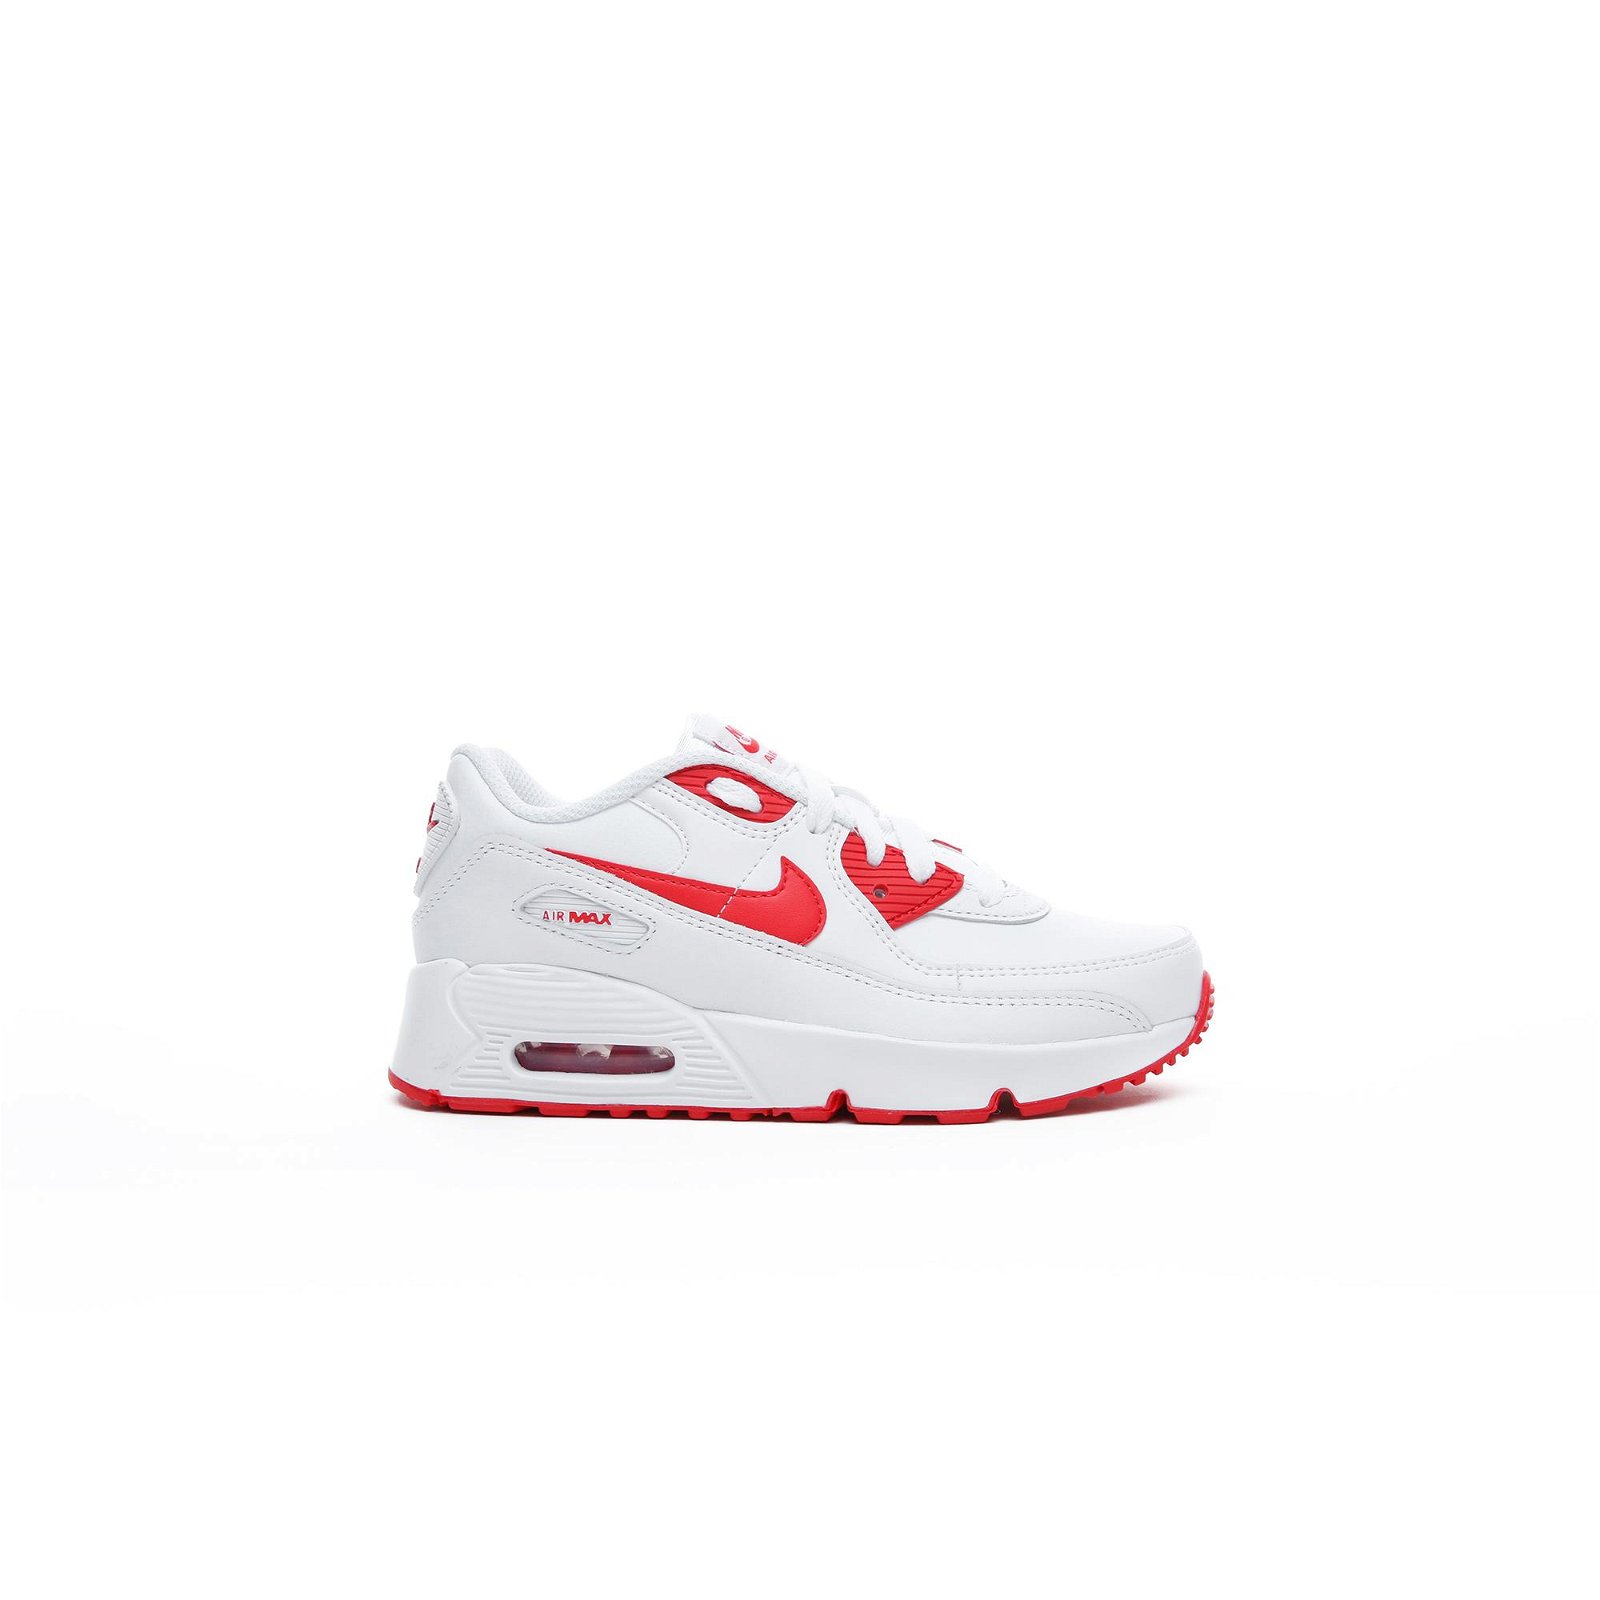 Nike Air Max 90 LTR Beyaz-Kırmızı Spor Ayakkabı